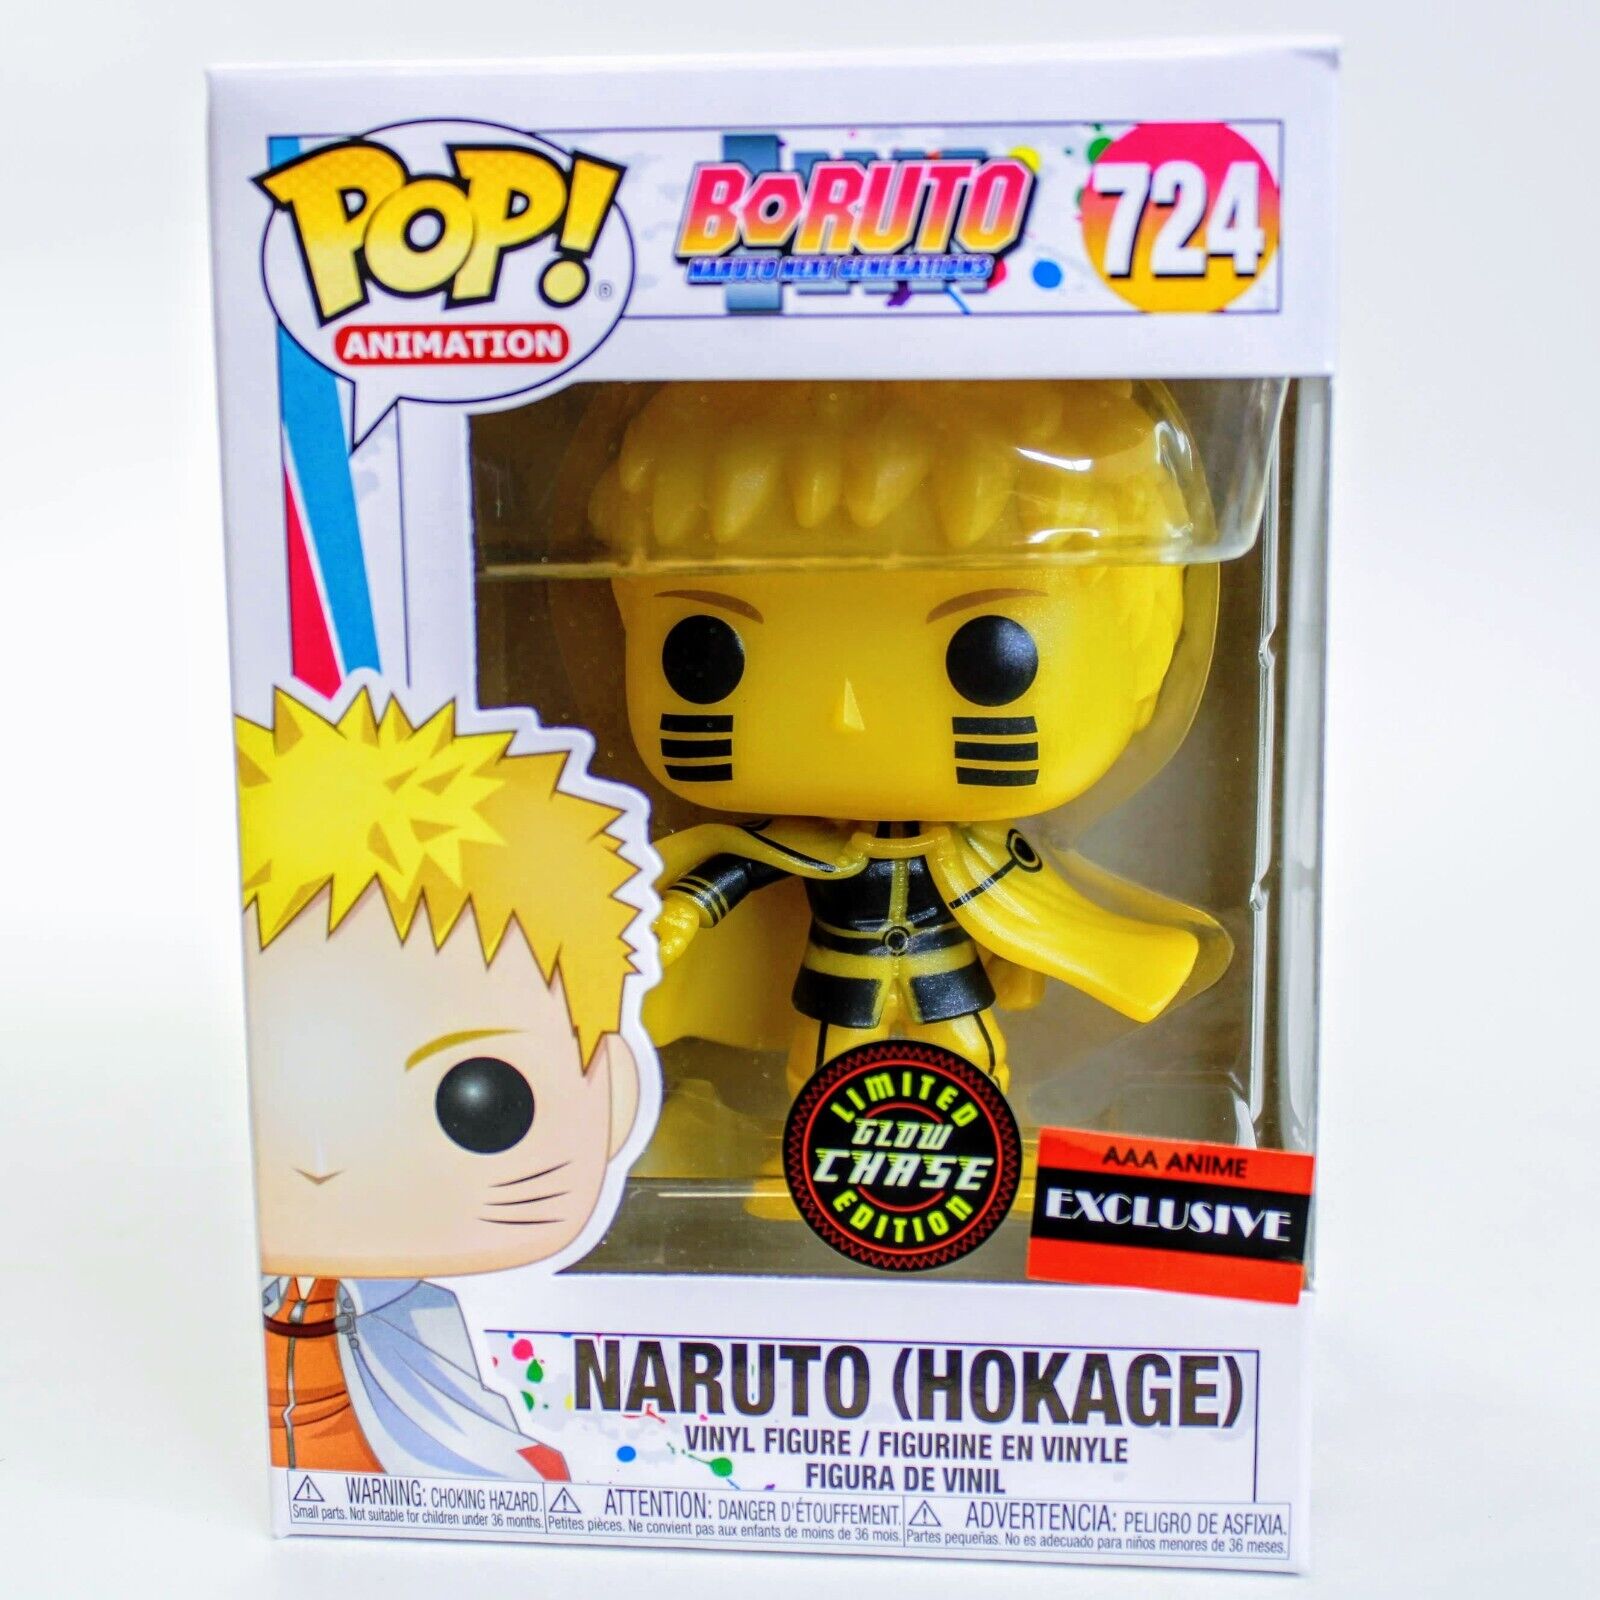 Funko Pop Boruto - Naruto Hokage Figure CHASE GITD AAA Anime Exclusive # 724